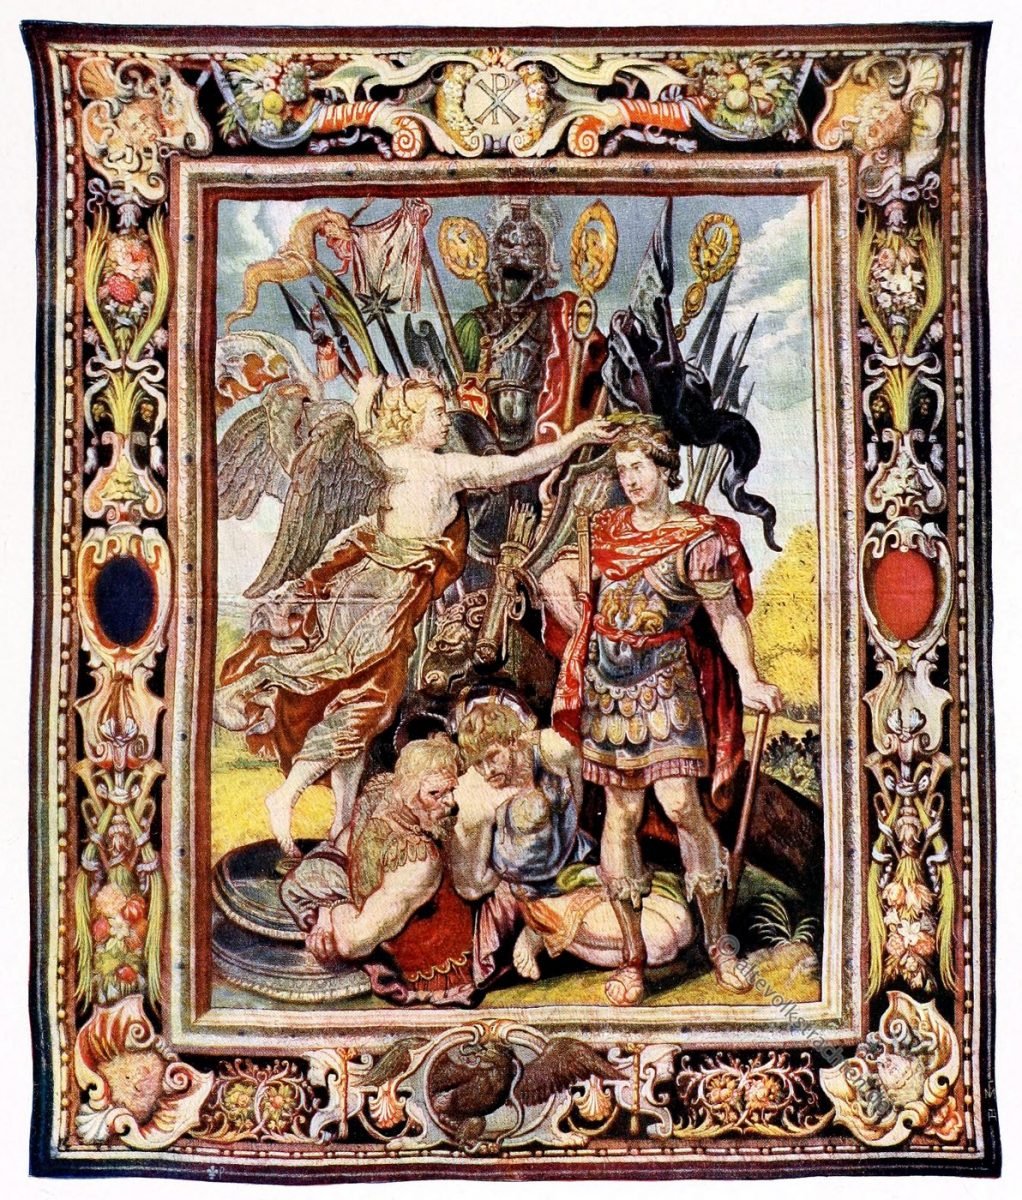 Gobelin, Barock, Kaiser, Konstantin, Kunsthistorie, Gobelinsammlung, Paris, 17. Jahrhundert